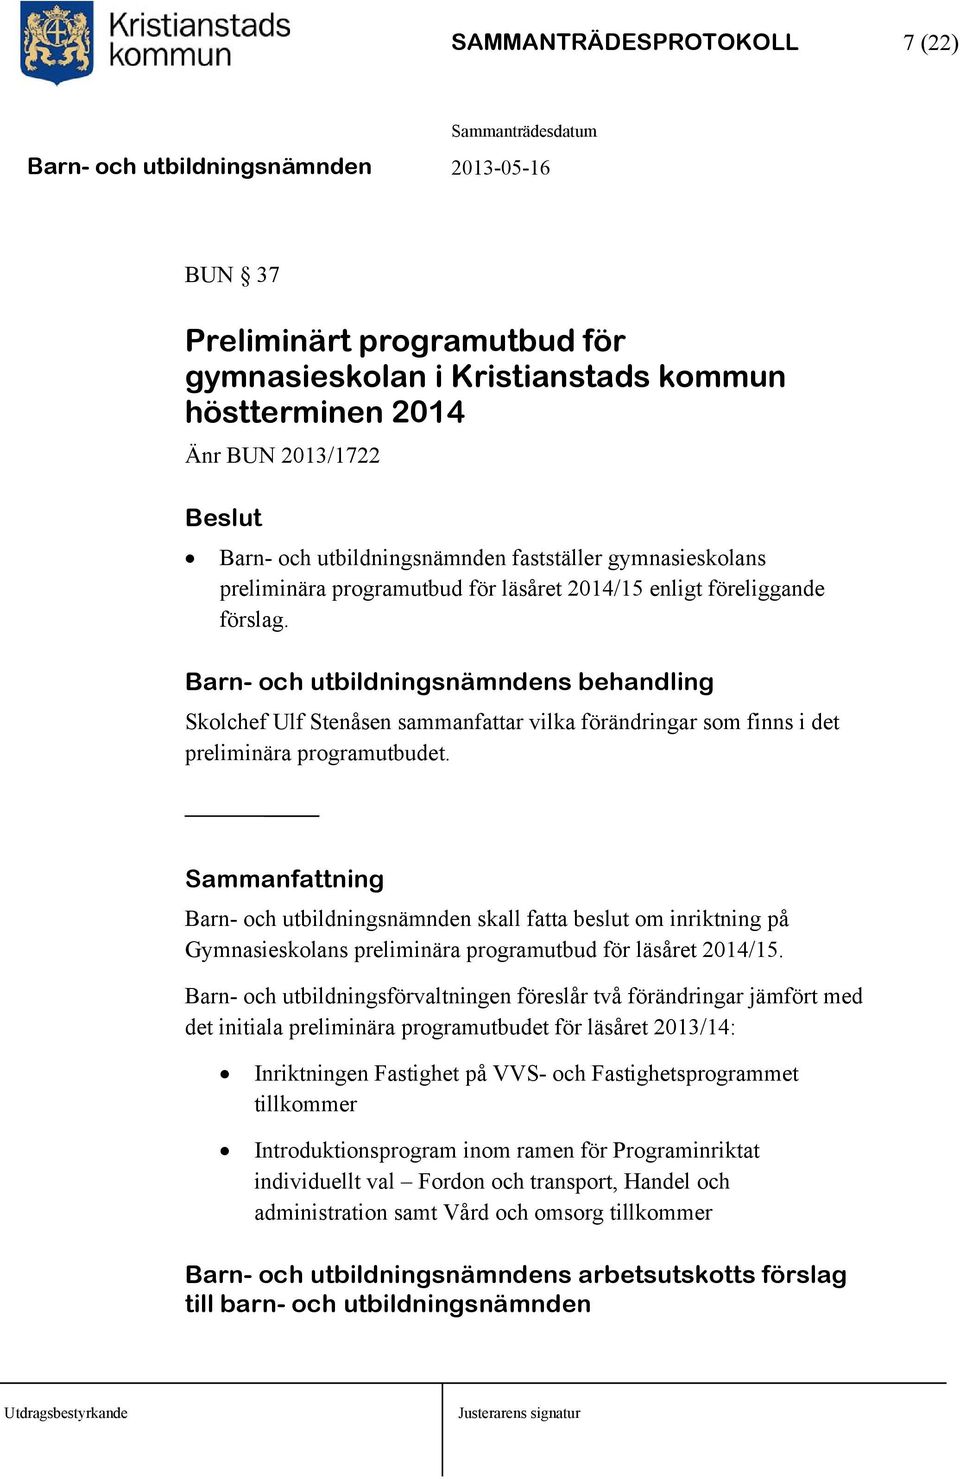 Barn- och utbildningsnämndens behandling Skolchef Ulf Stenåsen sammanfattar vilka förändringar som finns i det preliminära programutbudet.